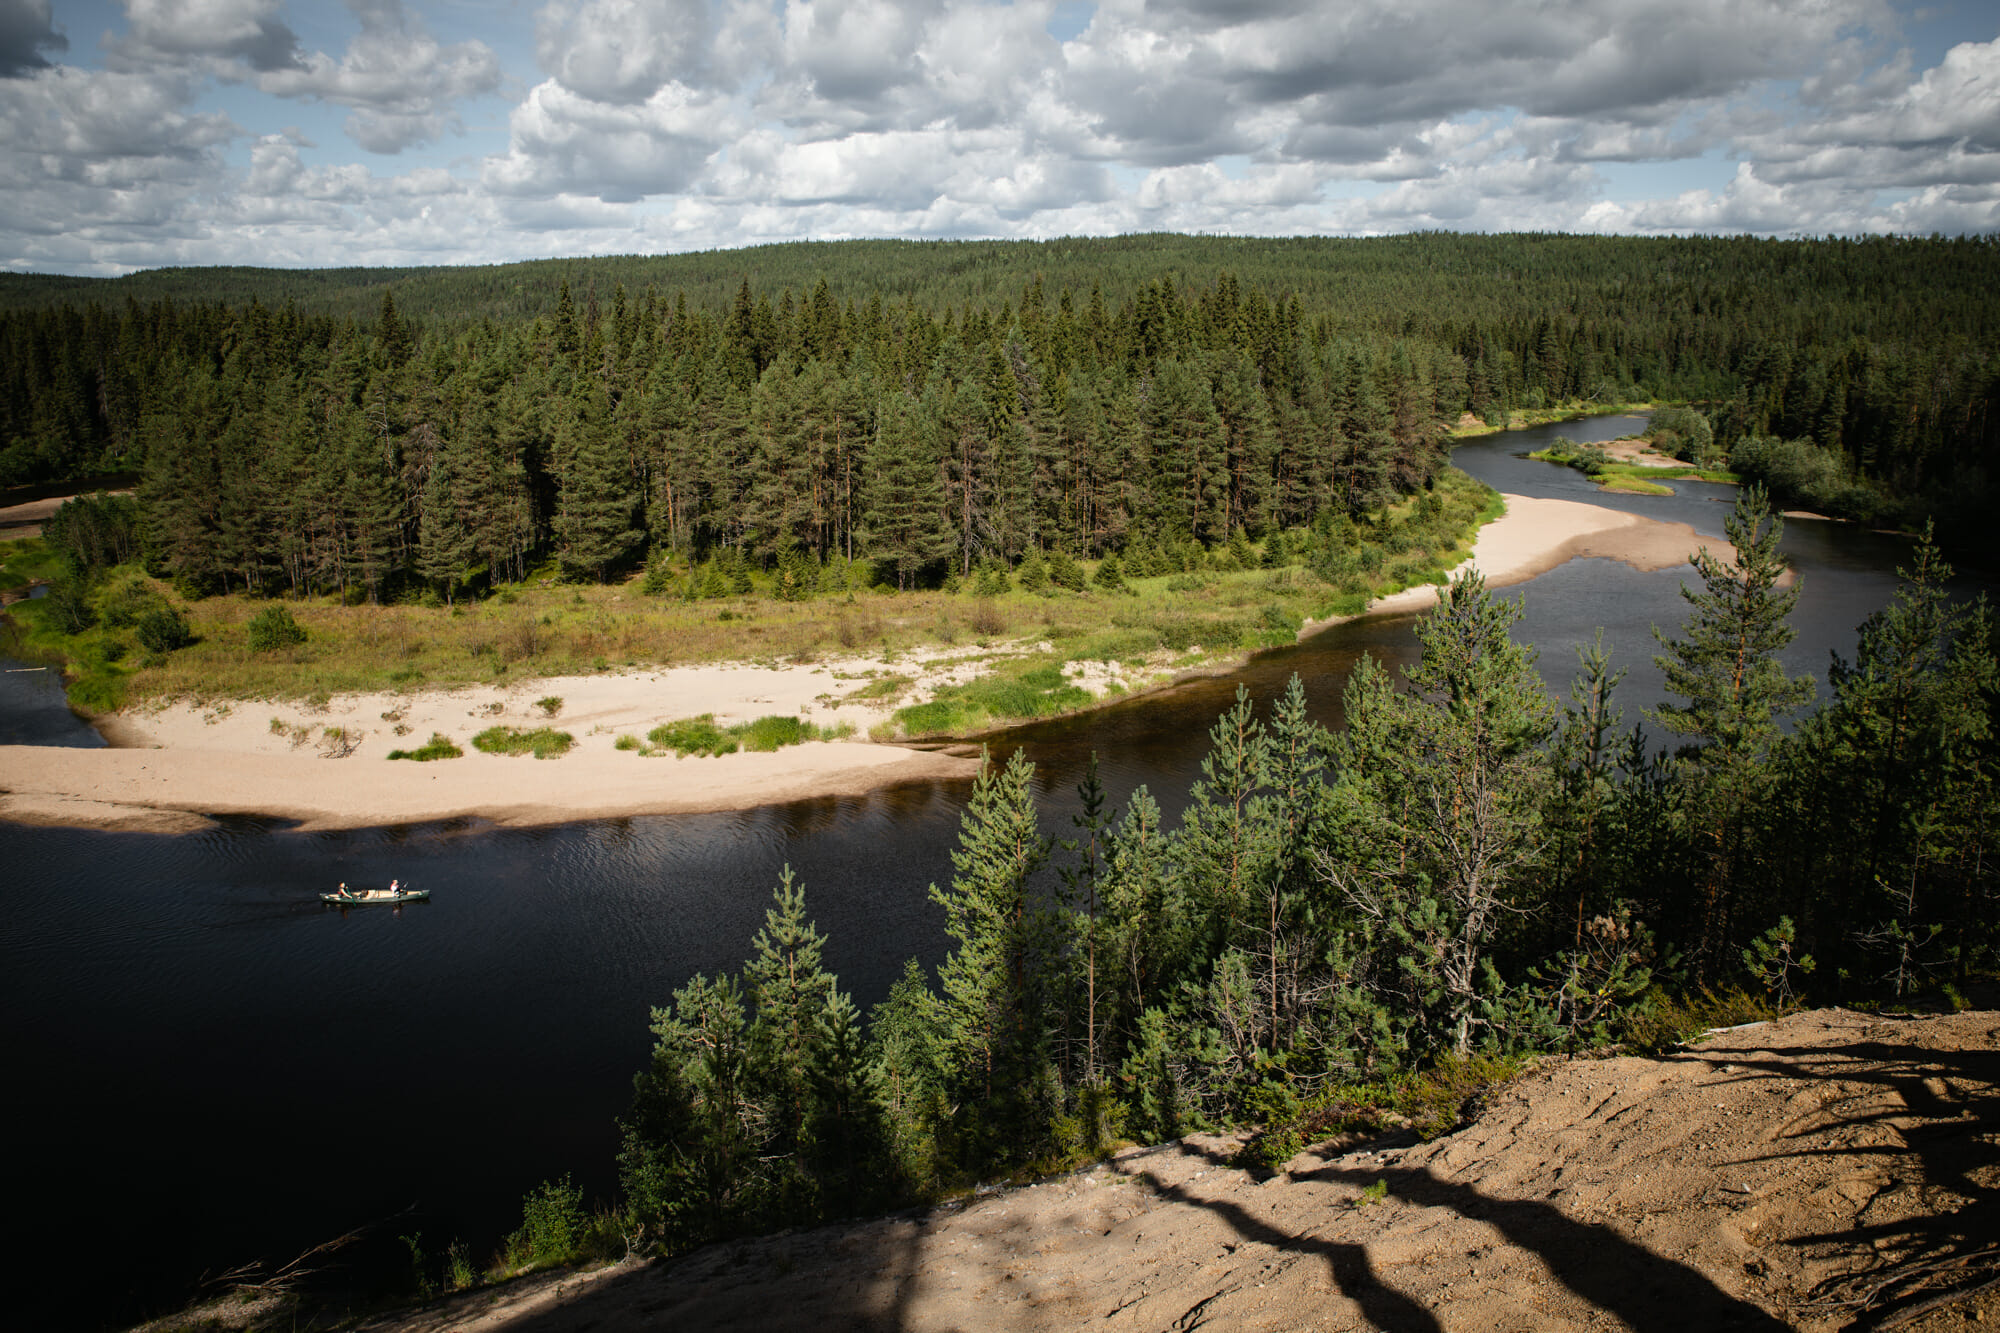 Packraft sur la rivière Oulanka - Laponie finlandaise